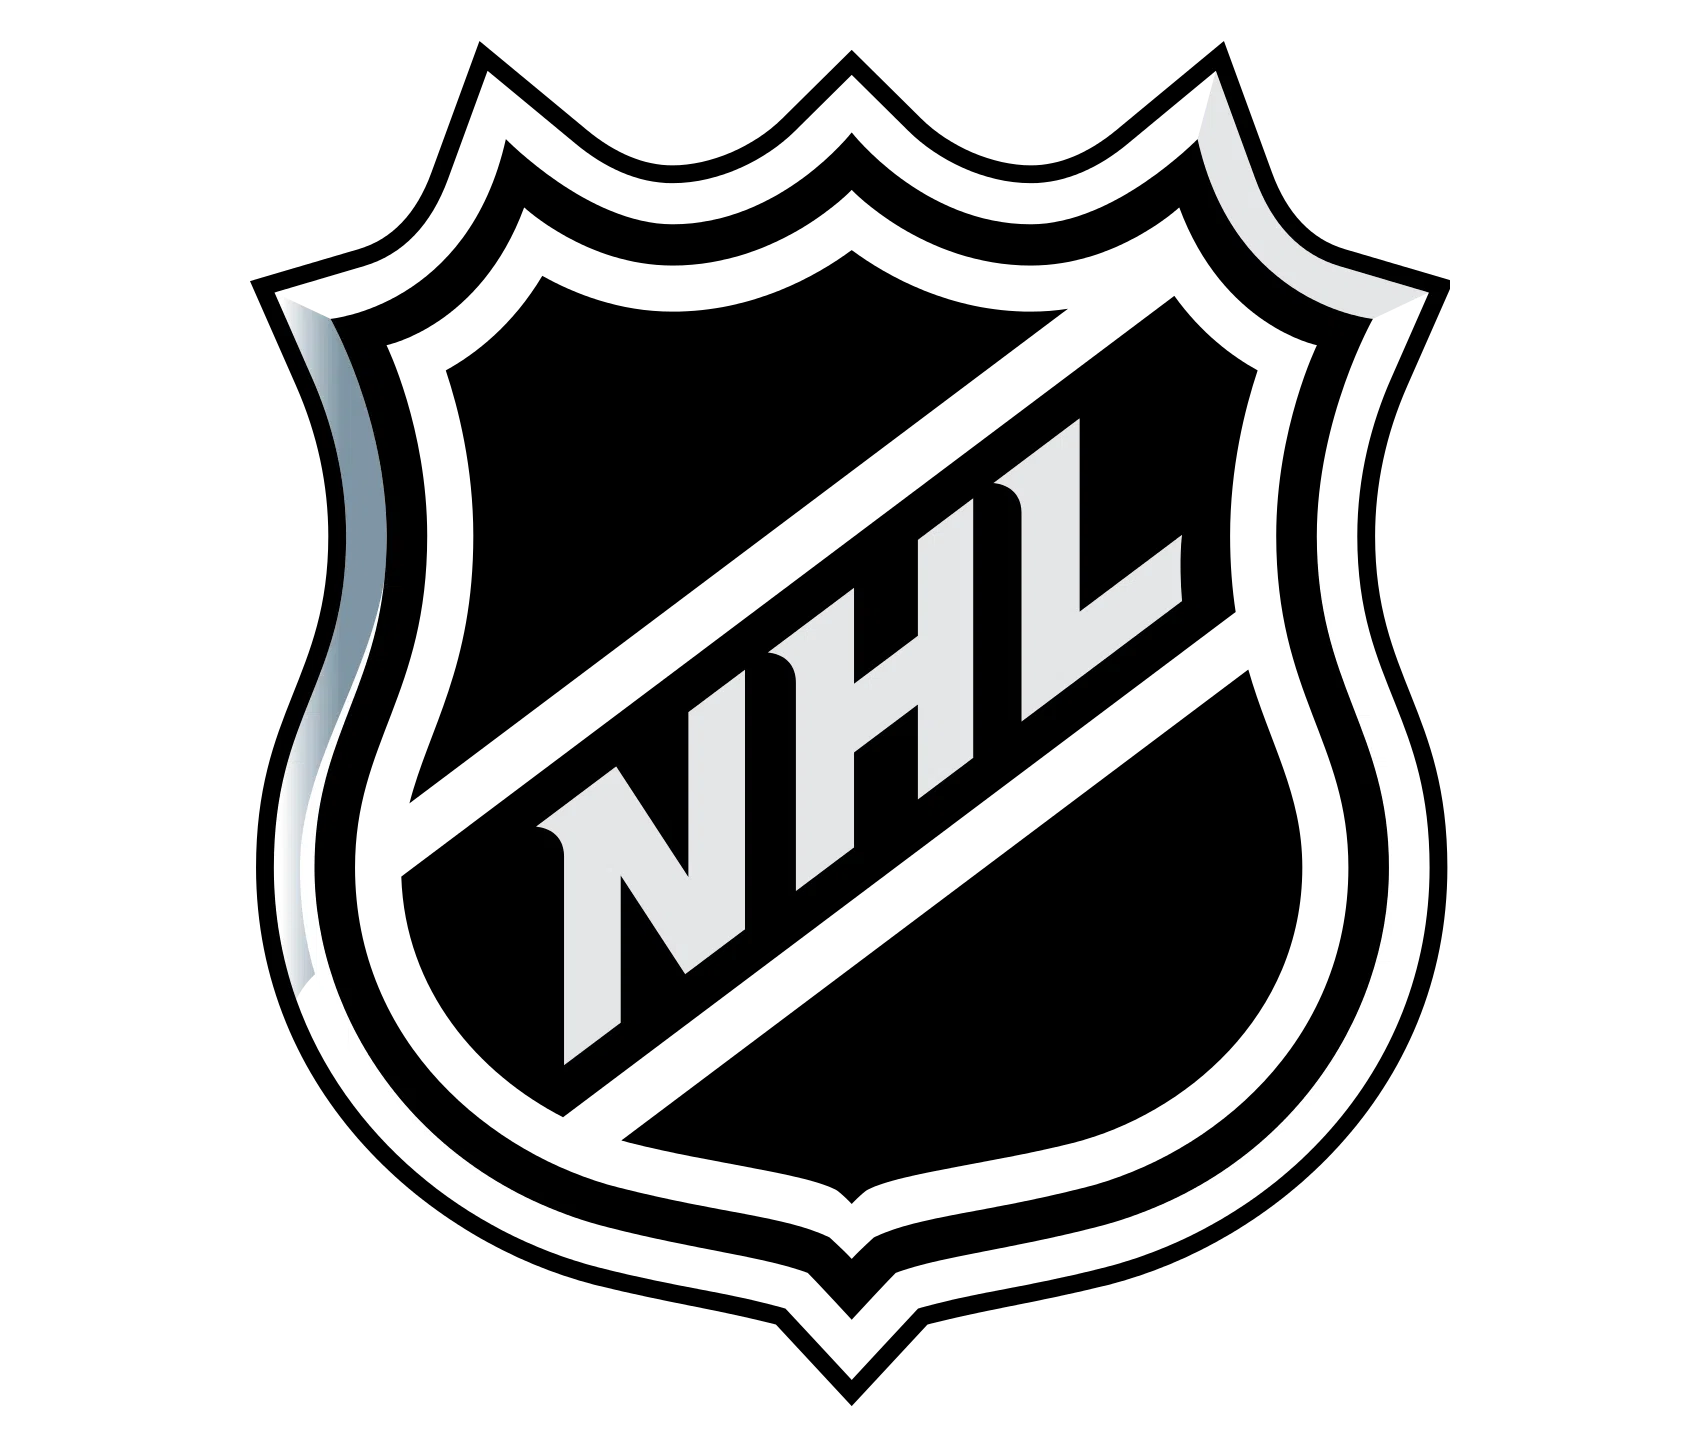 Summerside Minor Hockey Receives Big Donation from NHLPA